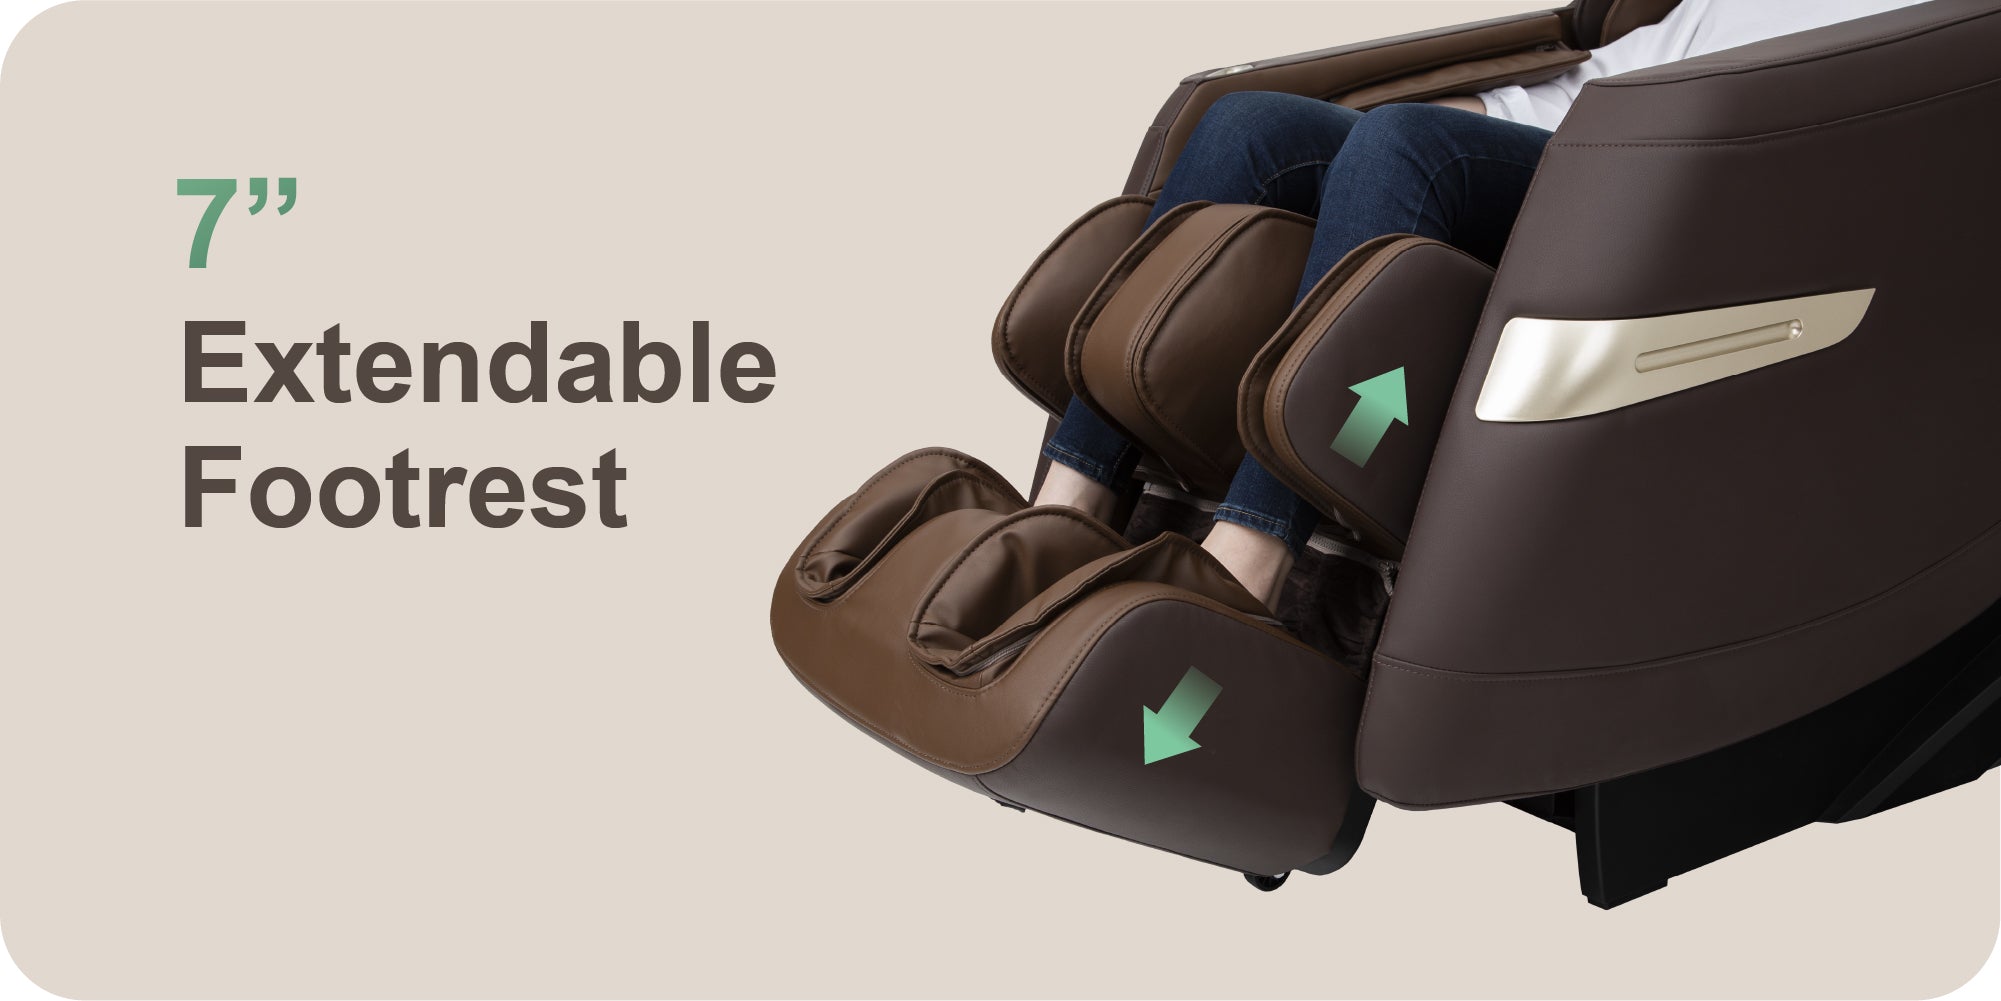 Titan 3D Quantum Full Body Massage Chair, Extendable Footrest